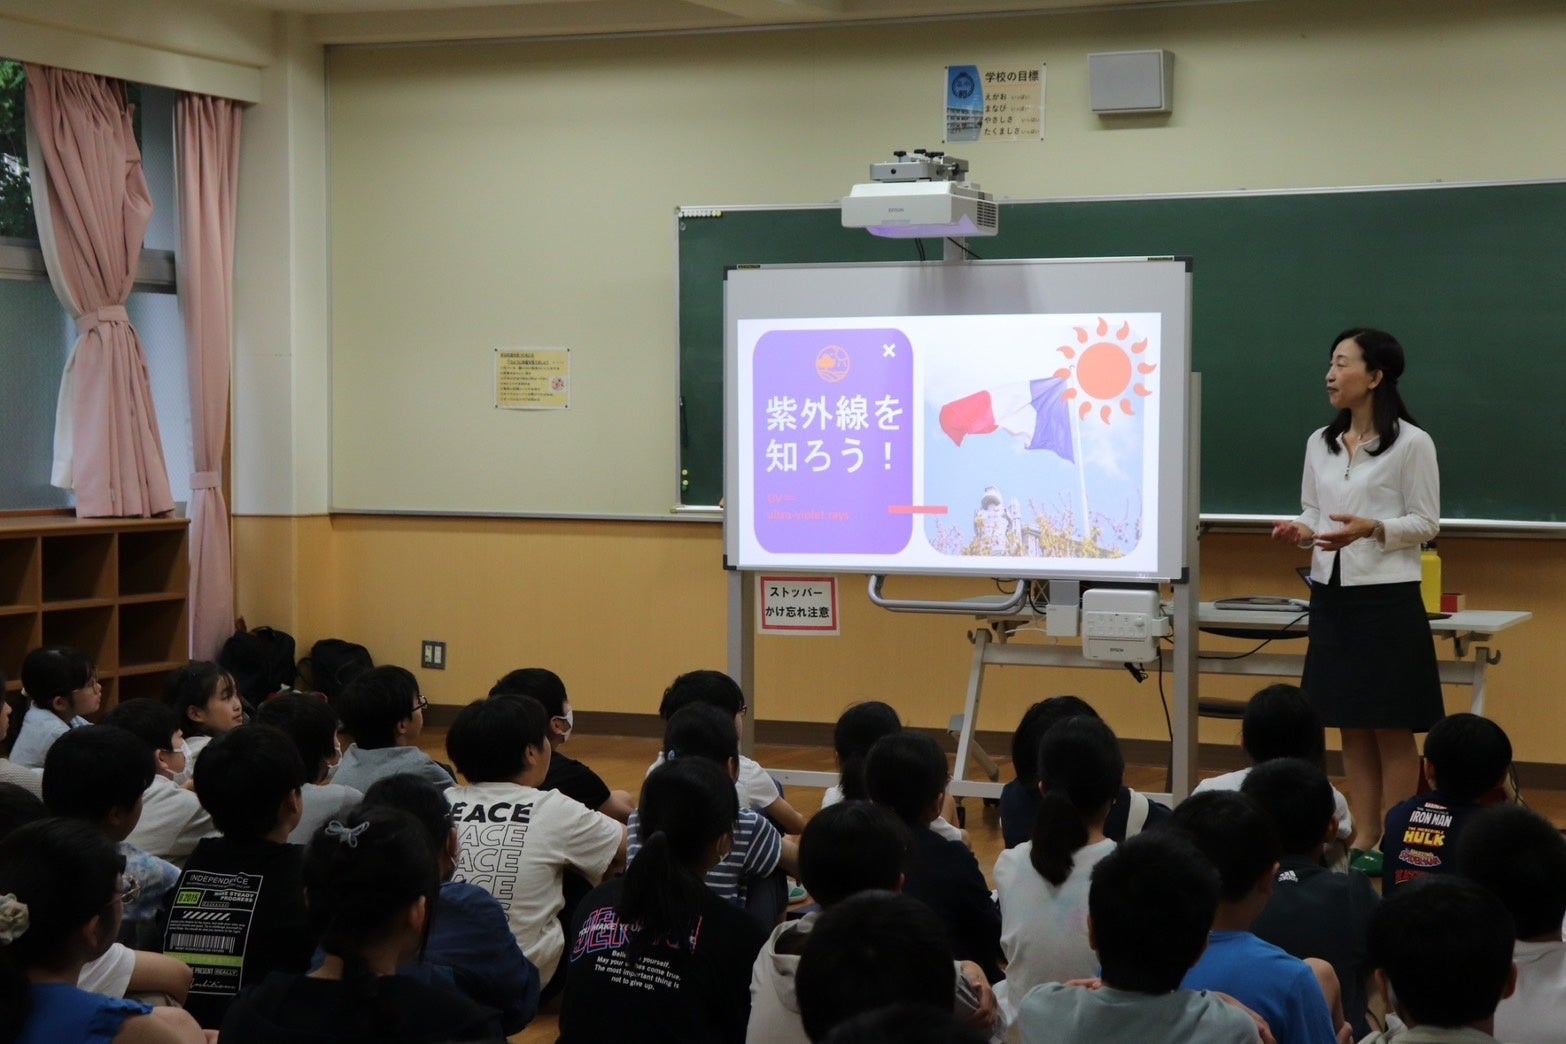 和光市立第三小学校の65周年記念として、３WAYUVカット制帽が「校帽」として採用されました